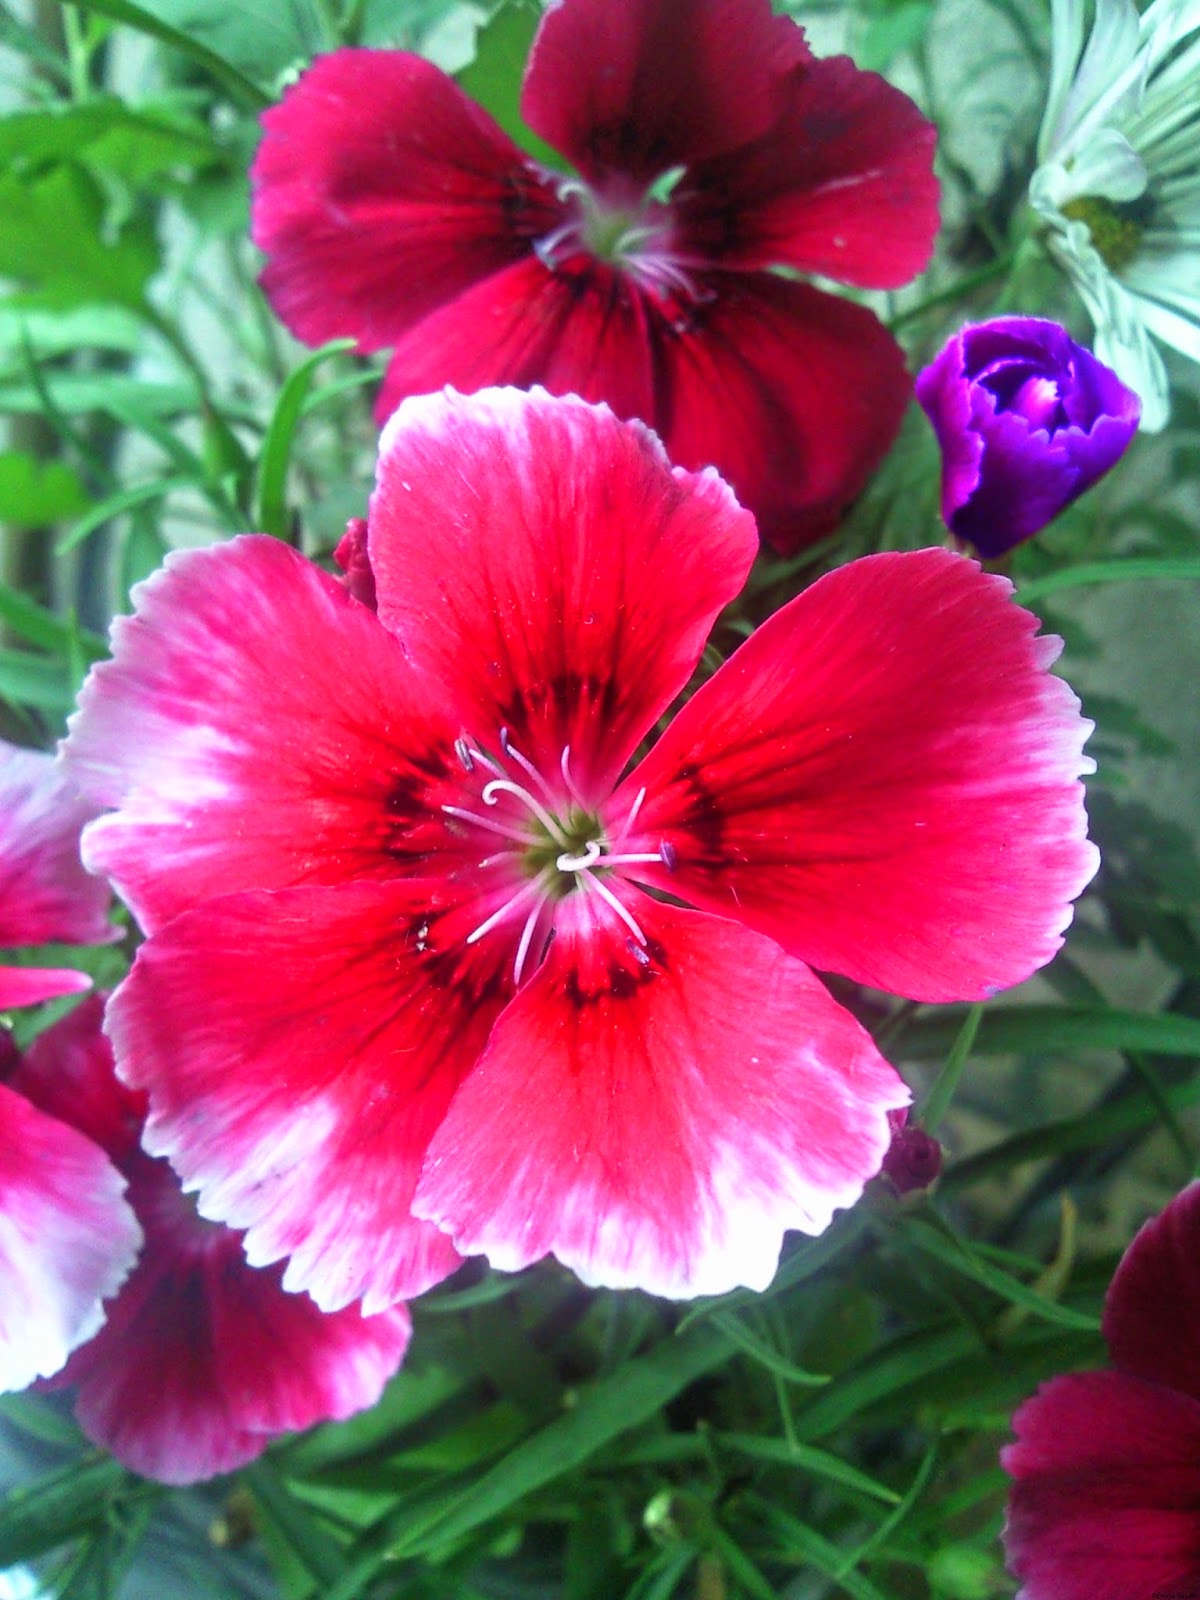 hd flower wallpapers 1080p,flower,flowering plant,petal,plant,sweet william